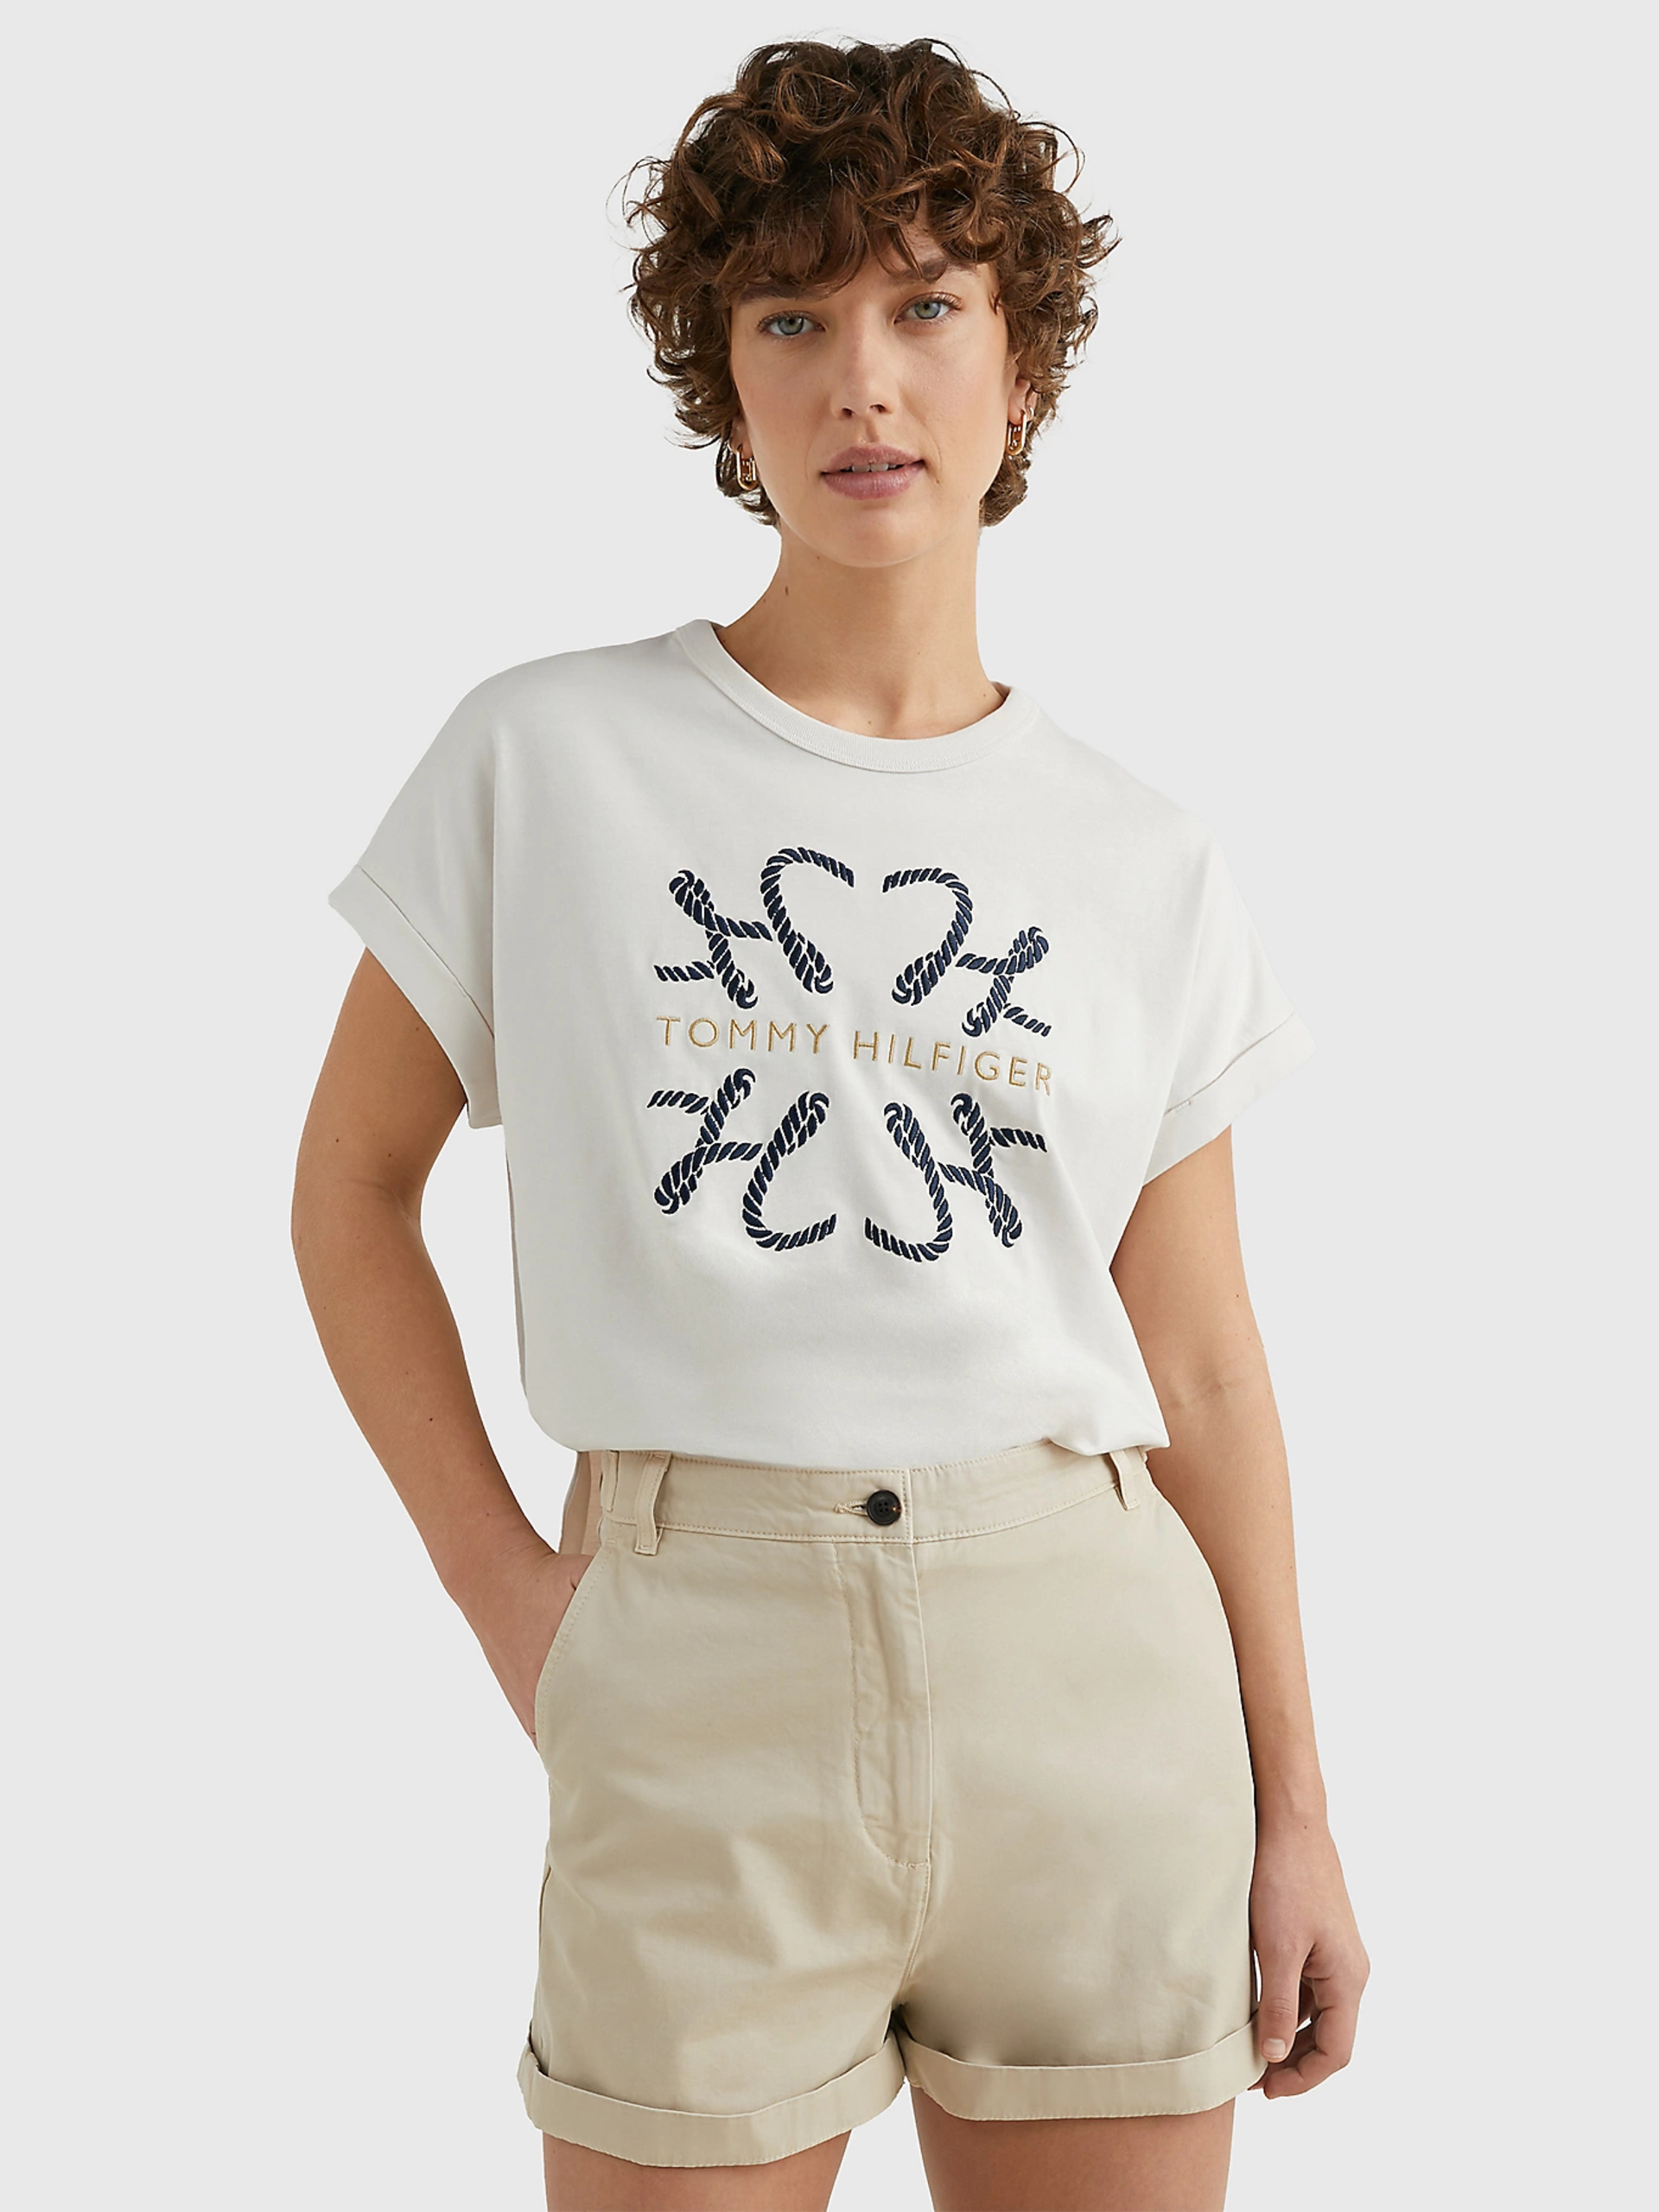 Tommy Hilfiger dámské krémové tričko - S (AC0)